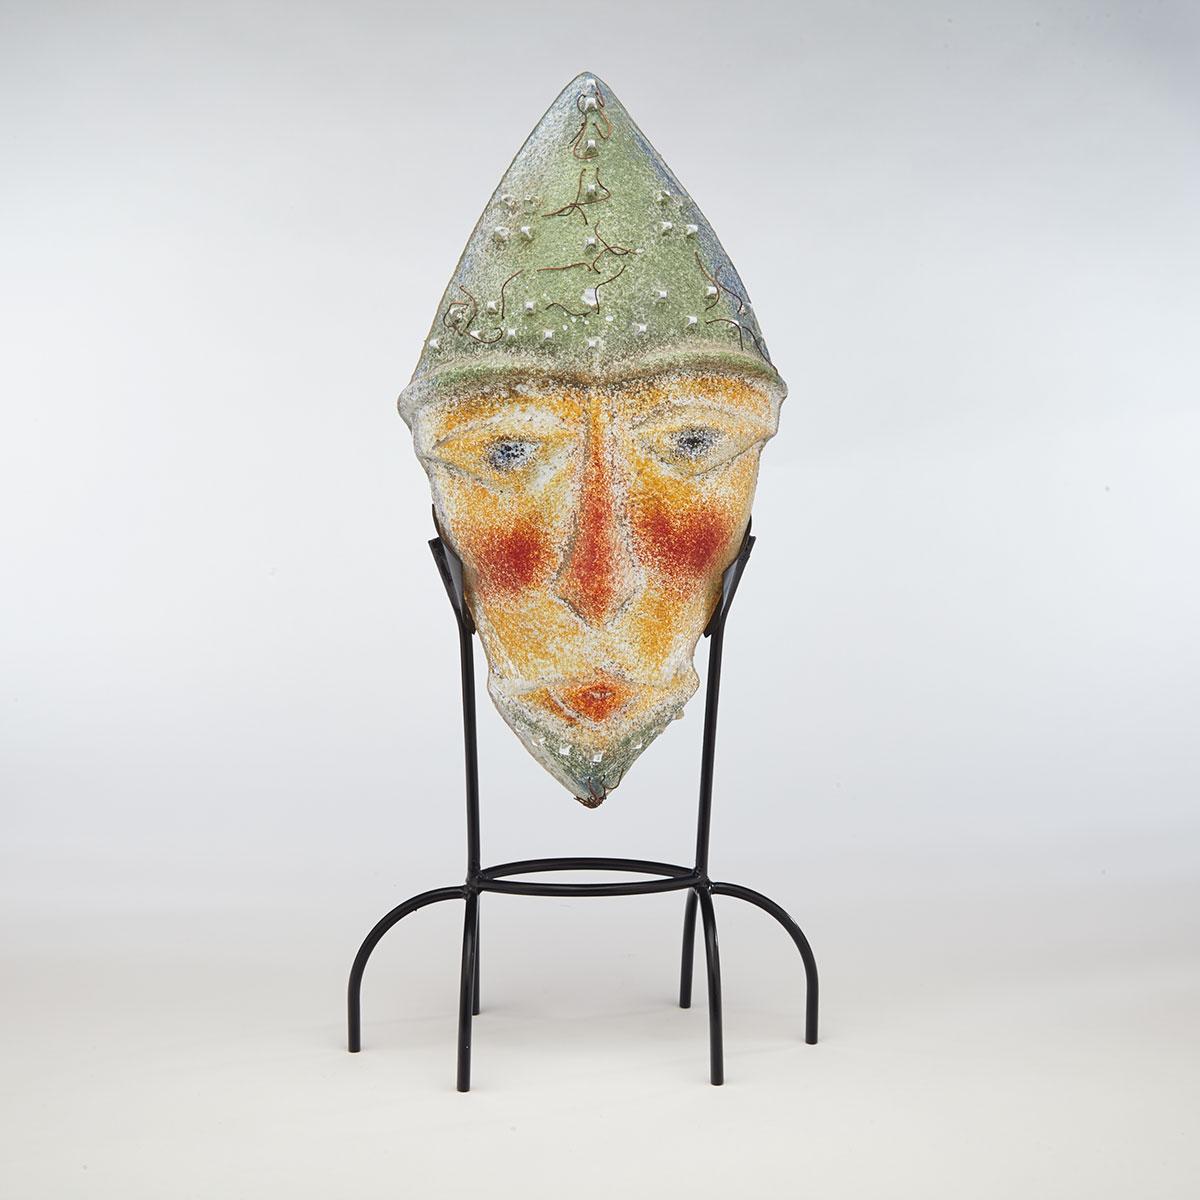 Diane Ferland (Canadian, b.1955), Enameled Glass Mask, c.2000